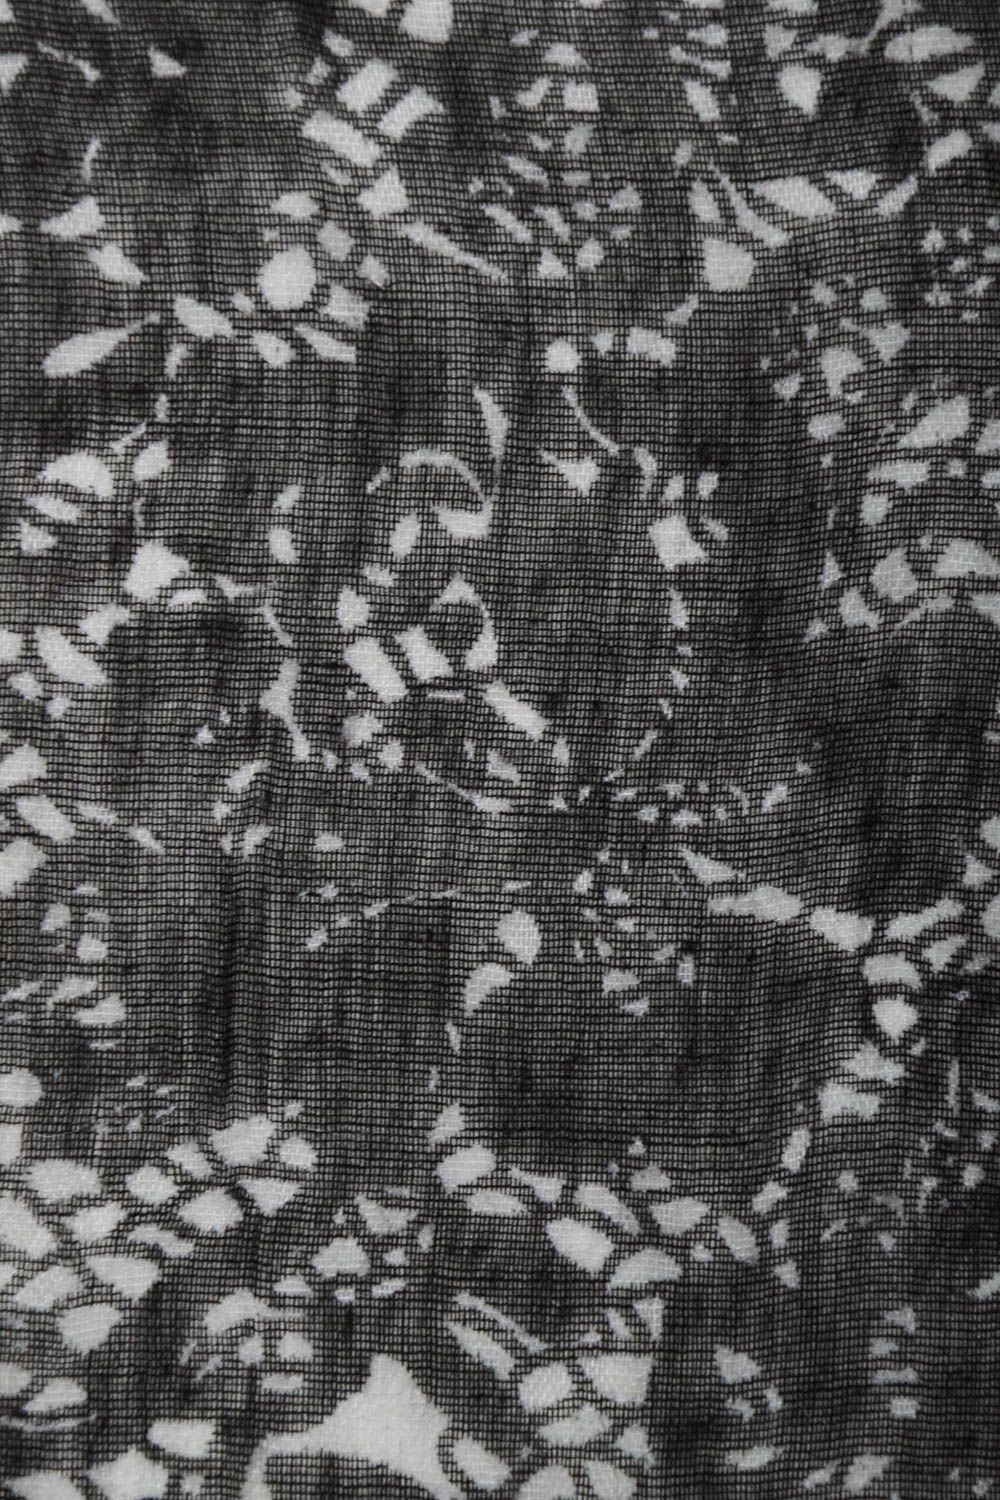 Écharpe laine feutrée faite main Vêtement femme noir et blanc Idée cadeau photo 3